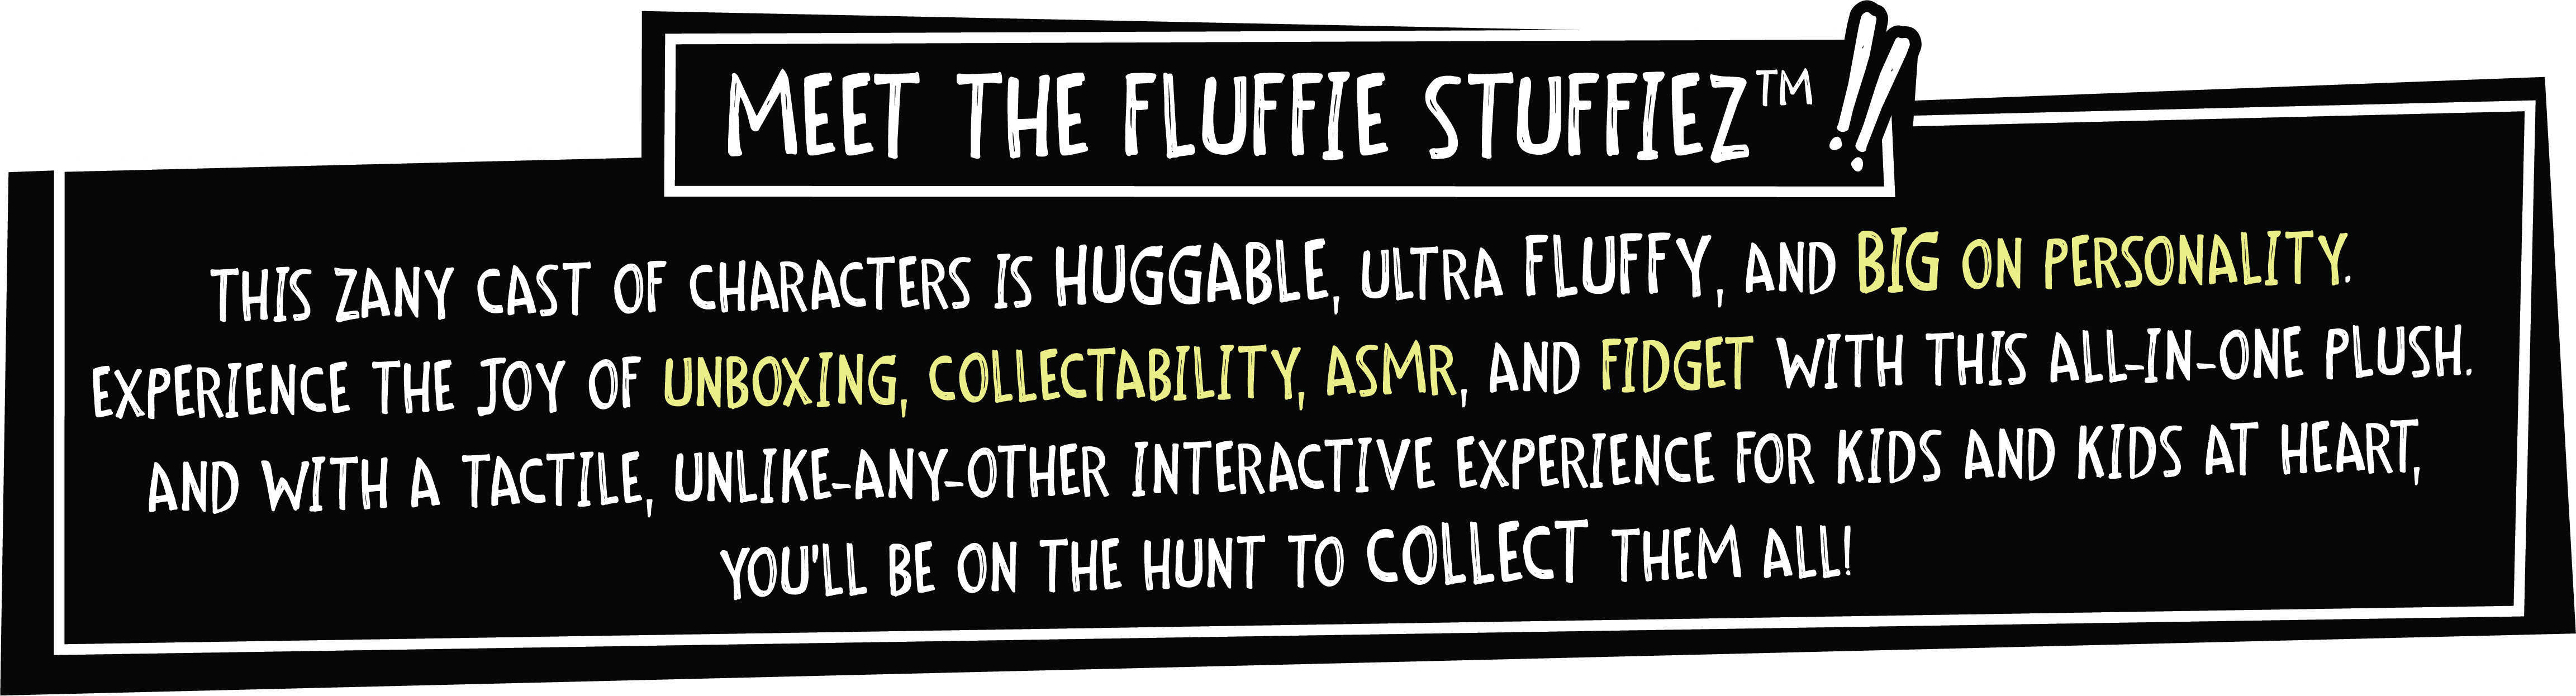 MGA launches collectible plush Fluffie StuffiezToy World Magazine